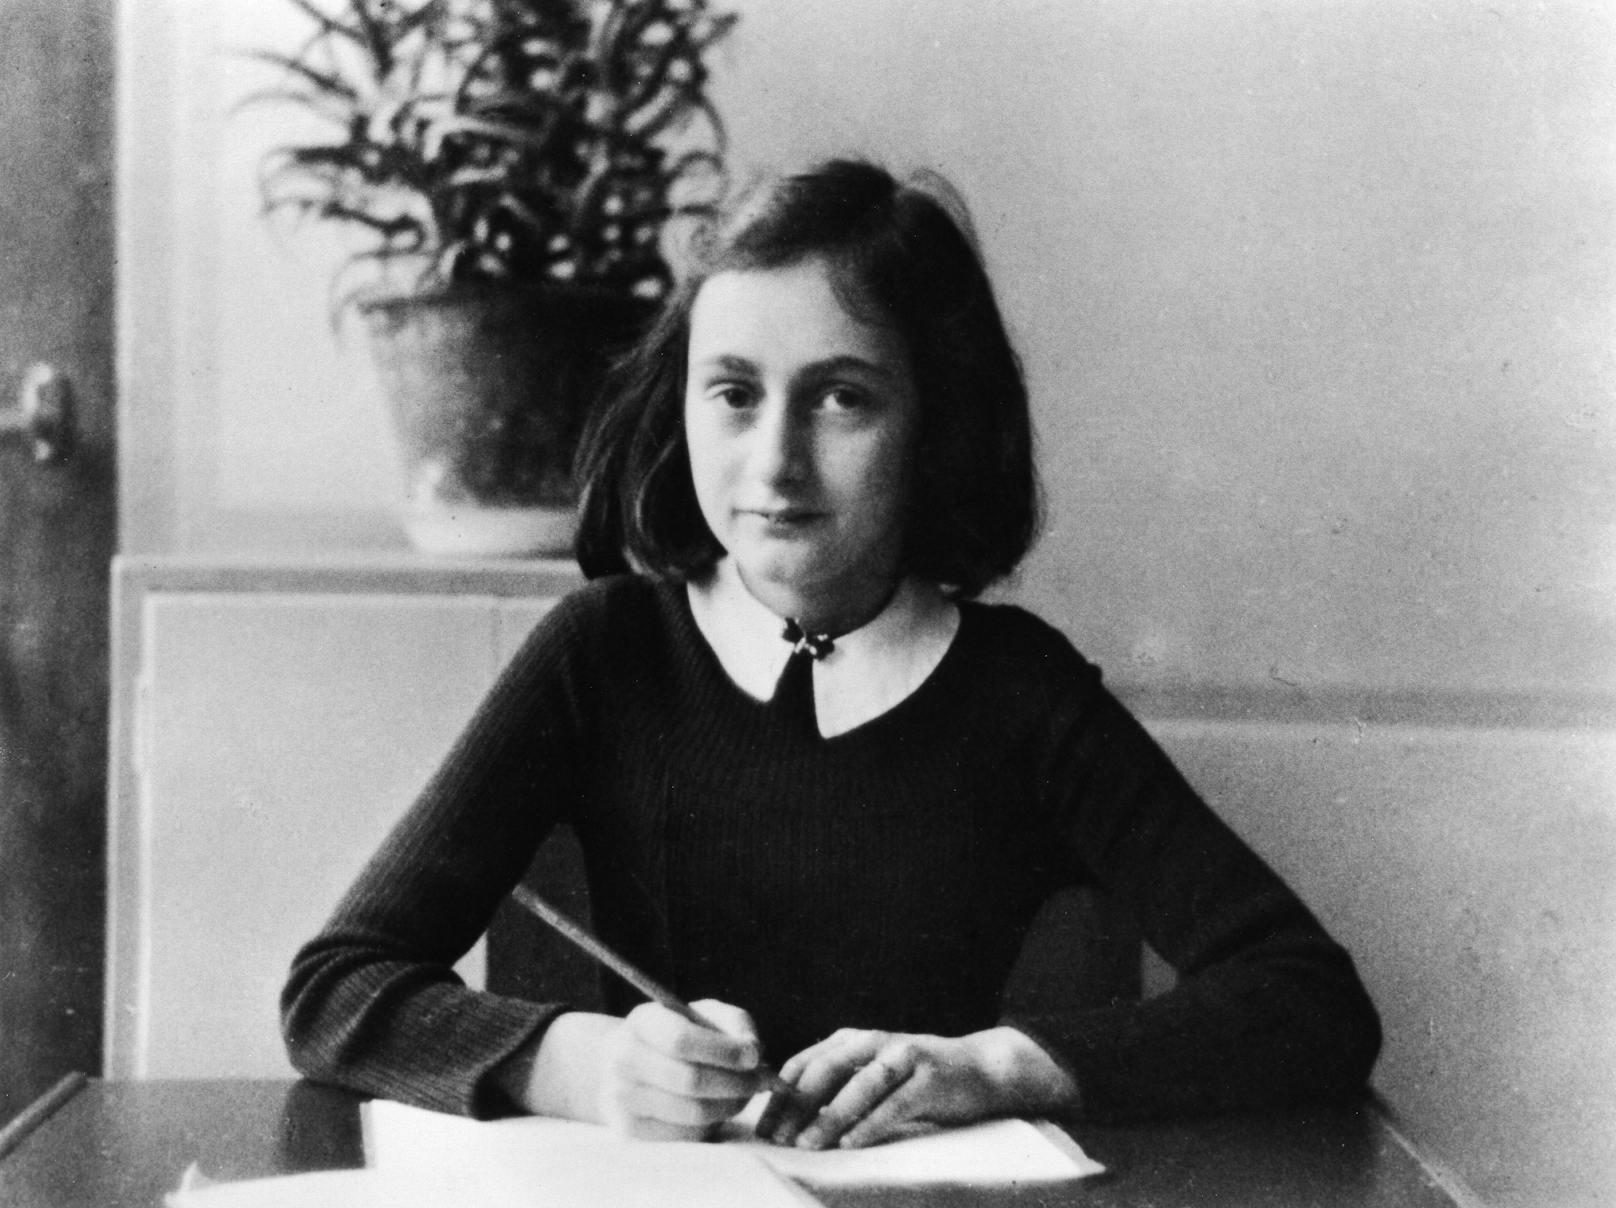 Anne Frank erreichte ein Rekordhoch bei den Google-Suchanfragen im Februar 2022, zeitgleich gab es die Netflix-Premiere des Films "Meine beste Freundin Anne Frank".